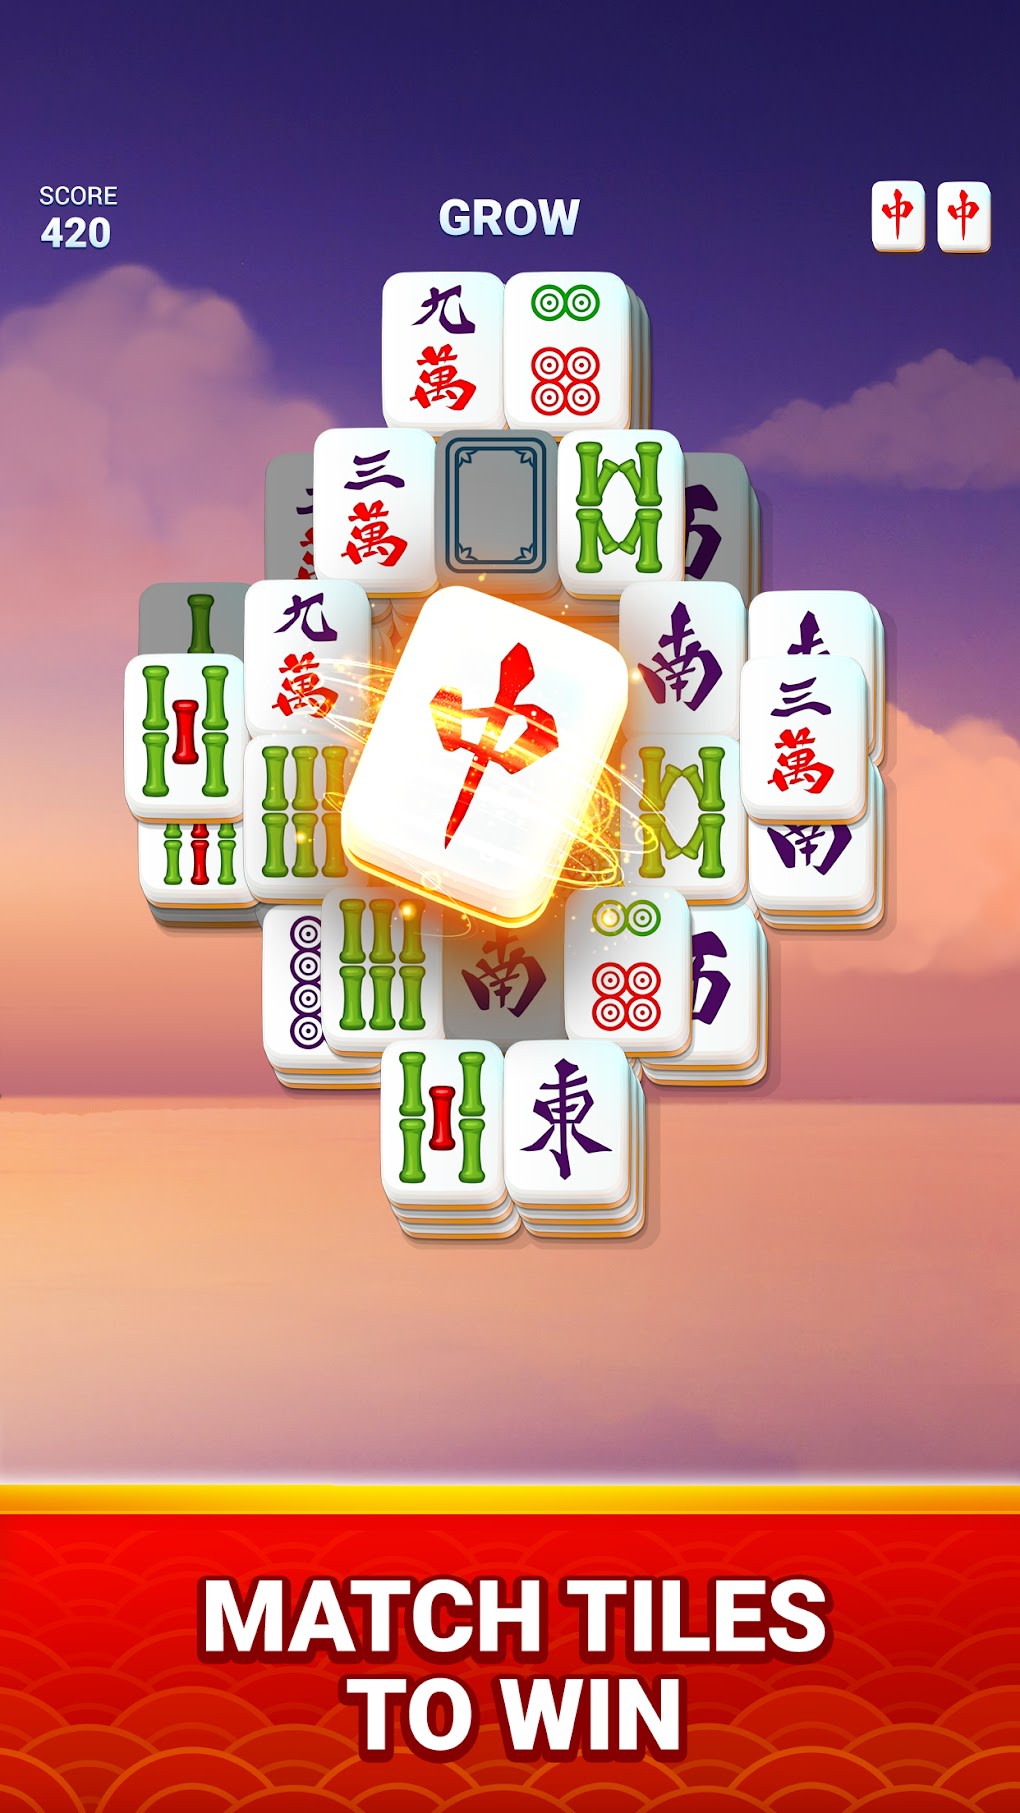 Baixe o Mahjong Club - Jogo Solitaire MOD APK v2.5.1 para Android